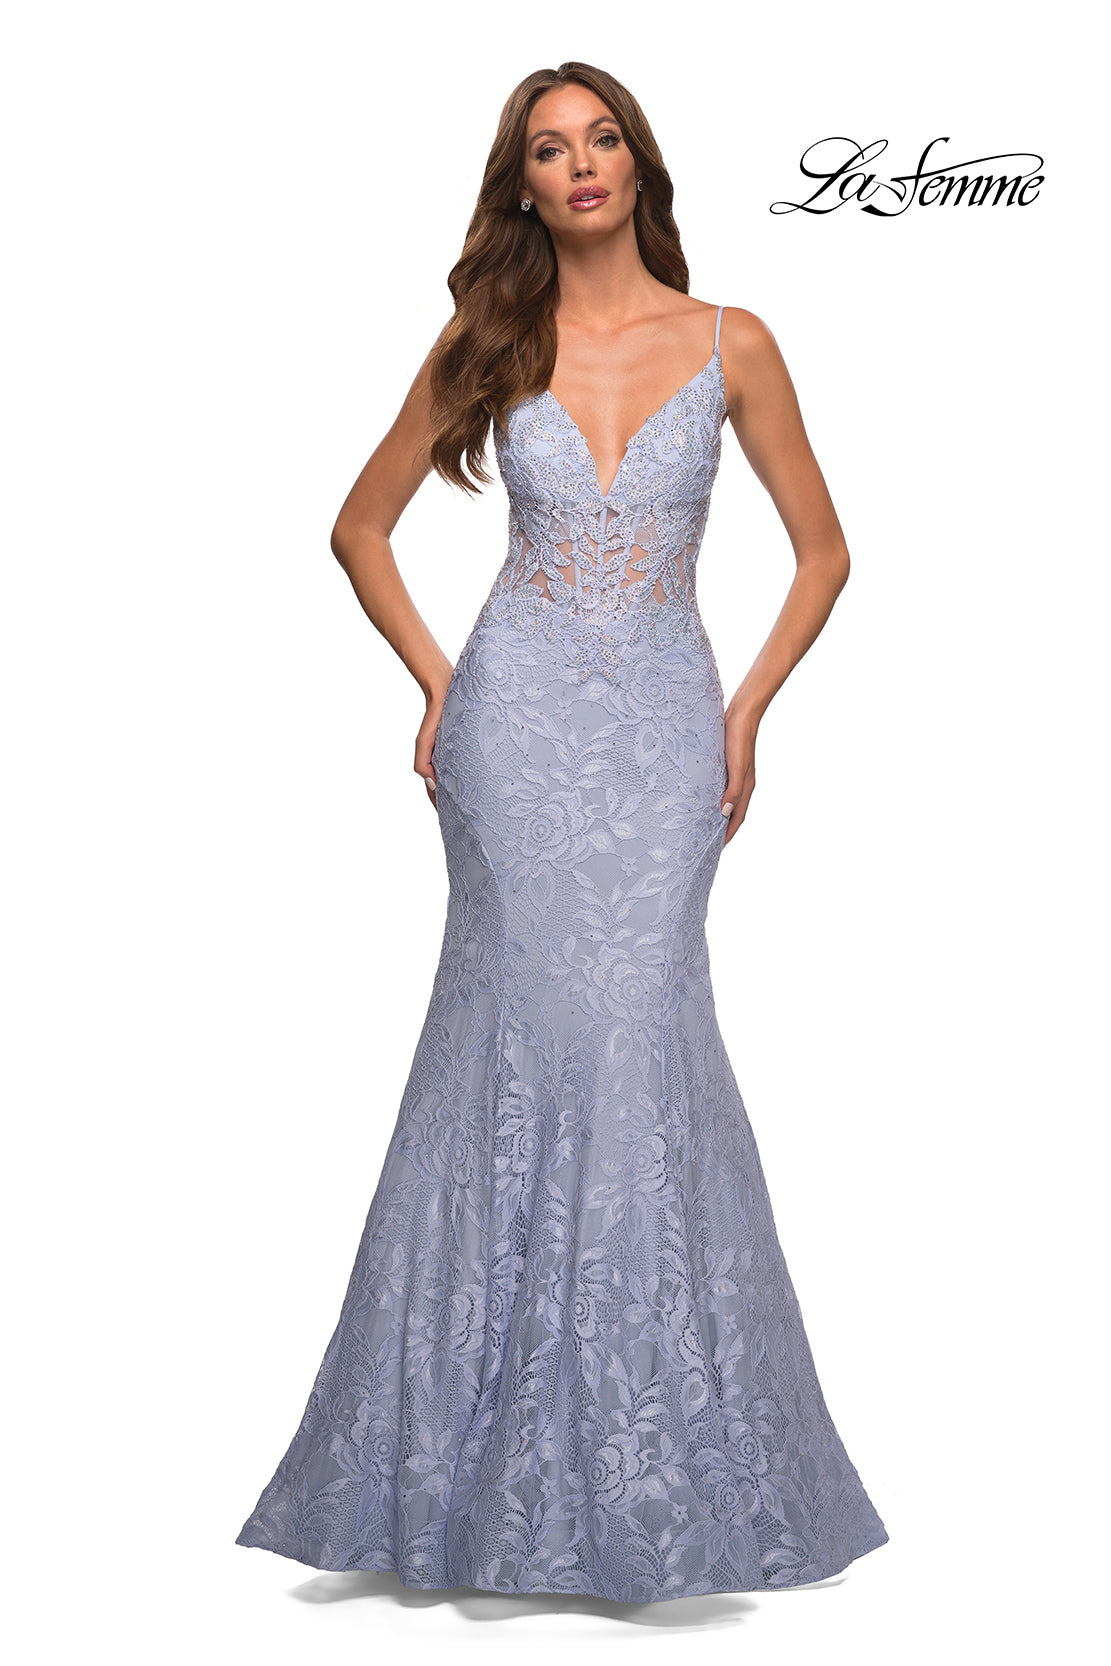  La Femme Sheer-Waist Long Lace Mermaid Prom Dress